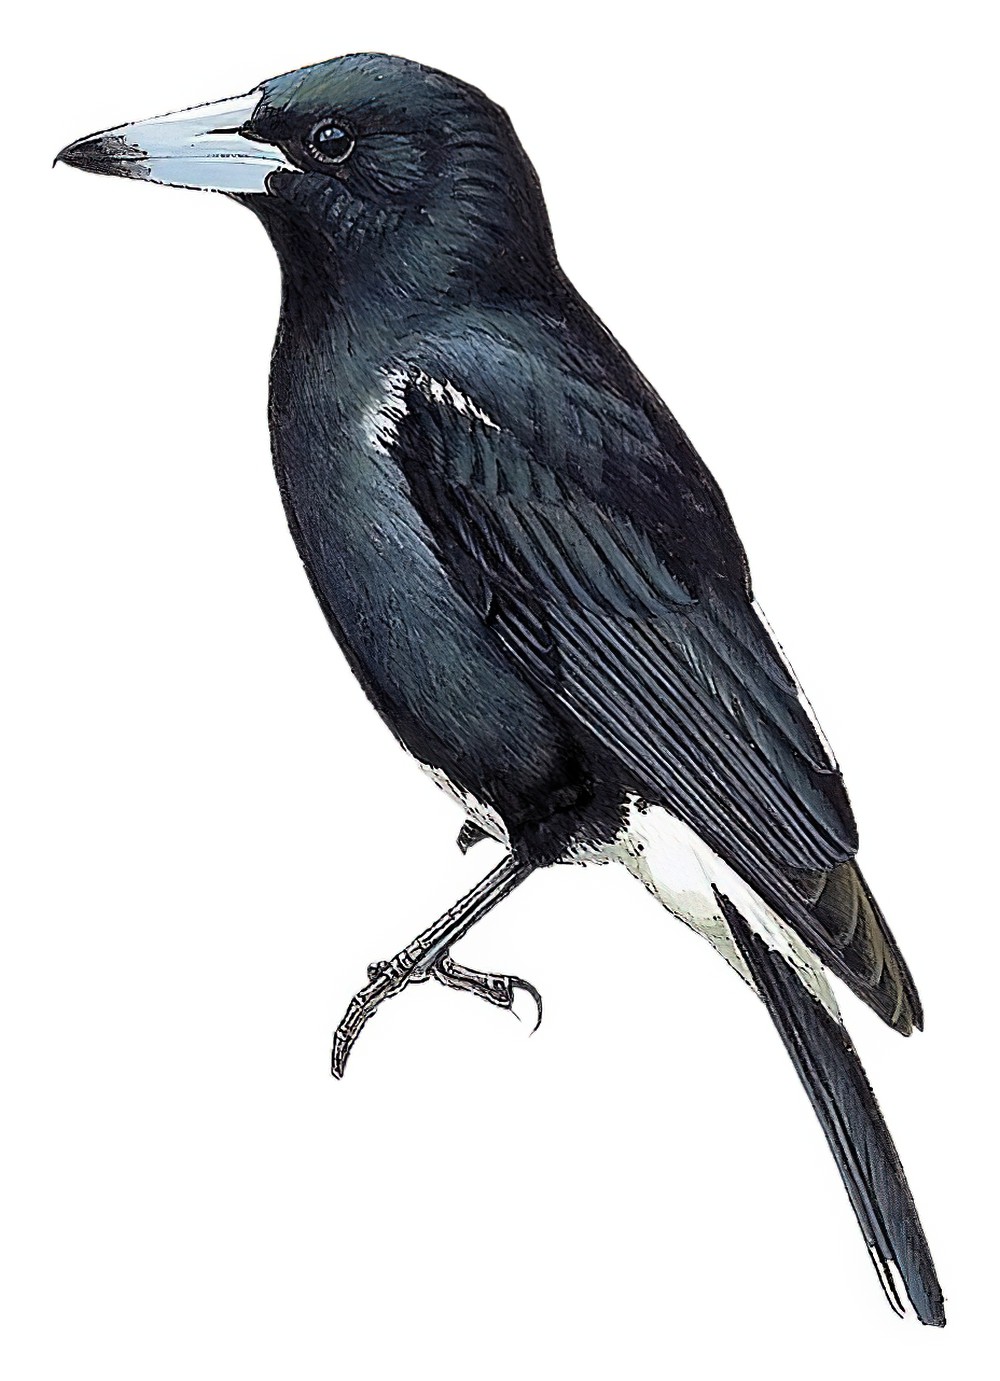 Tagula Butcherbird / Cracticus louisiadensis